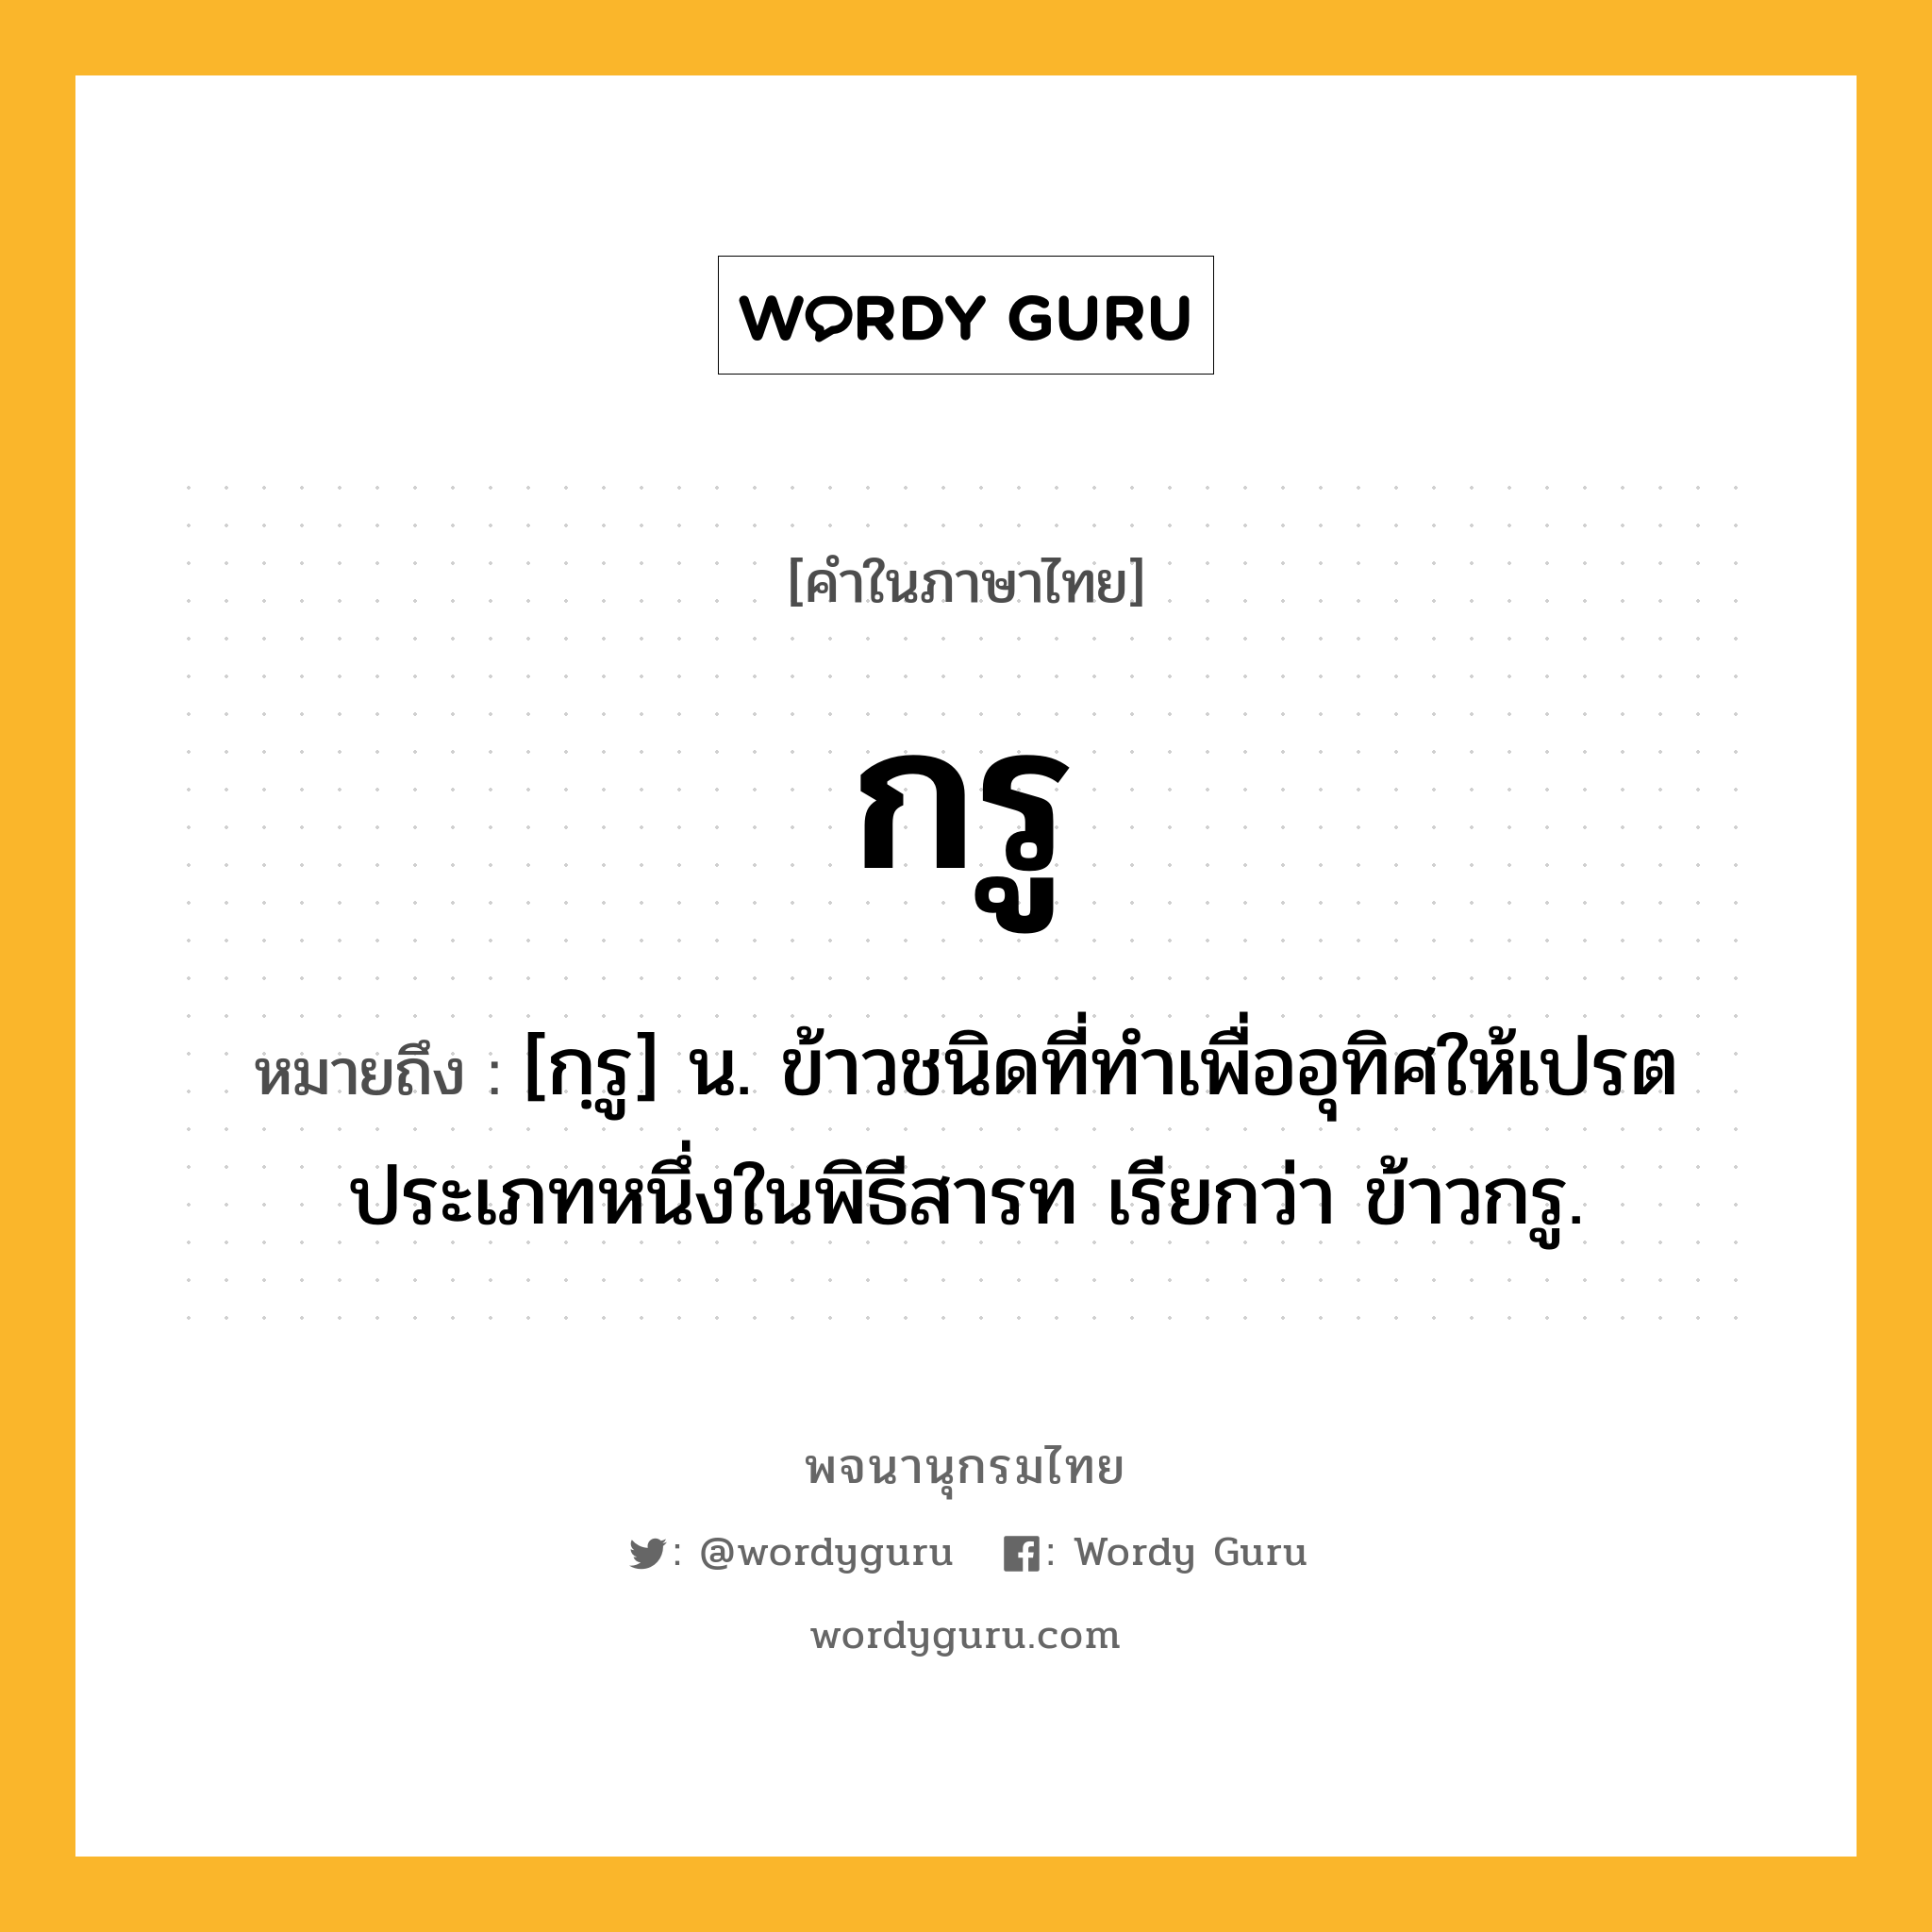 กรู ความหมาย หมายถึงอะไร?, คำในภาษาไทย กรู หมายถึง [กฺรู] น. ข้าวชนิดที่ทําเพื่ออุทิศให้เปรตประเภทหนึ่งในพิธีสารท เรียกว่า ข้าวกรู.